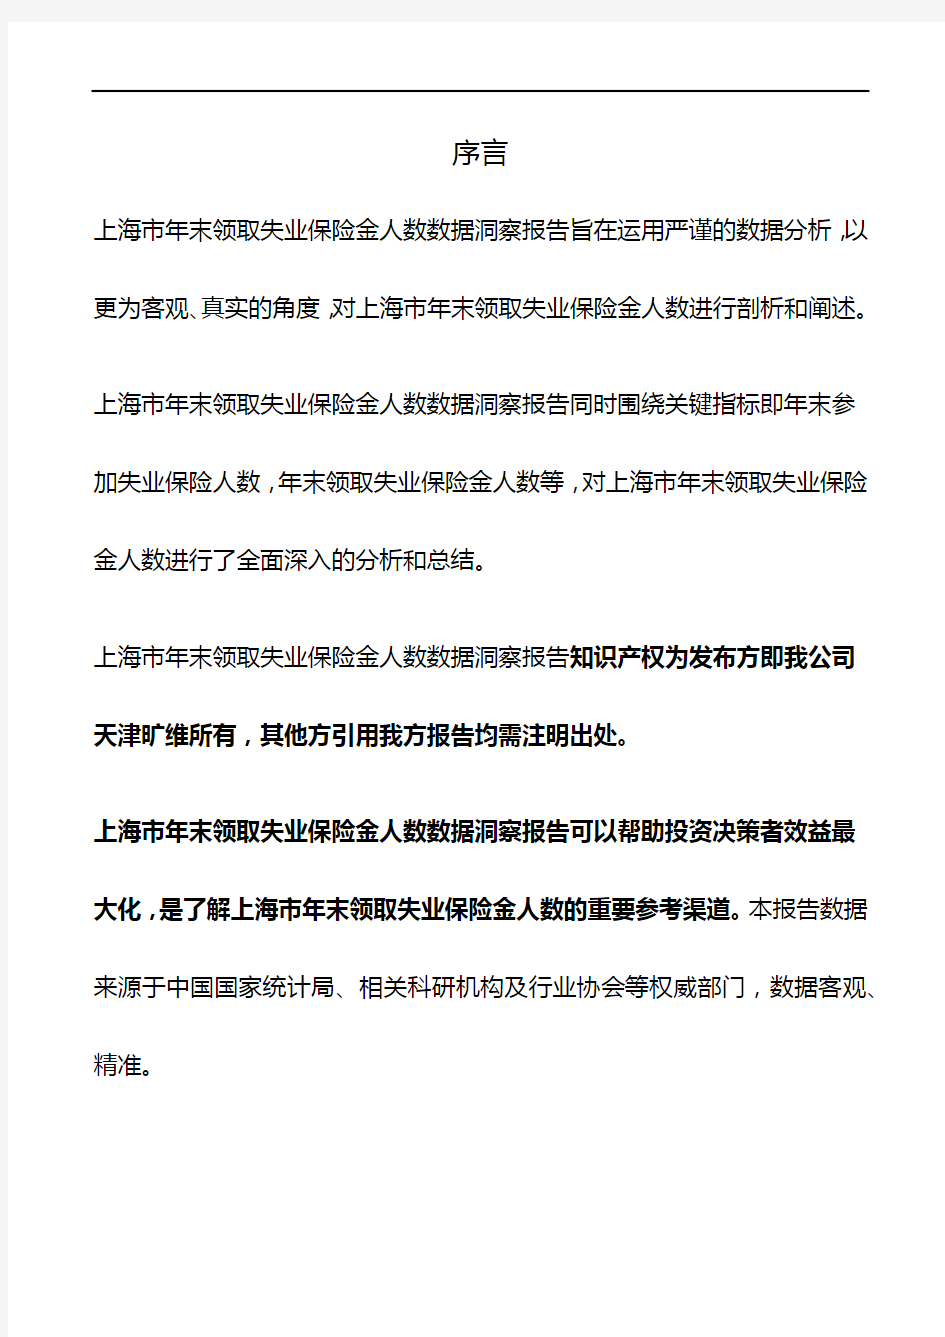 上海市年末领取失业保险金人数3年数据洞察报告2019版